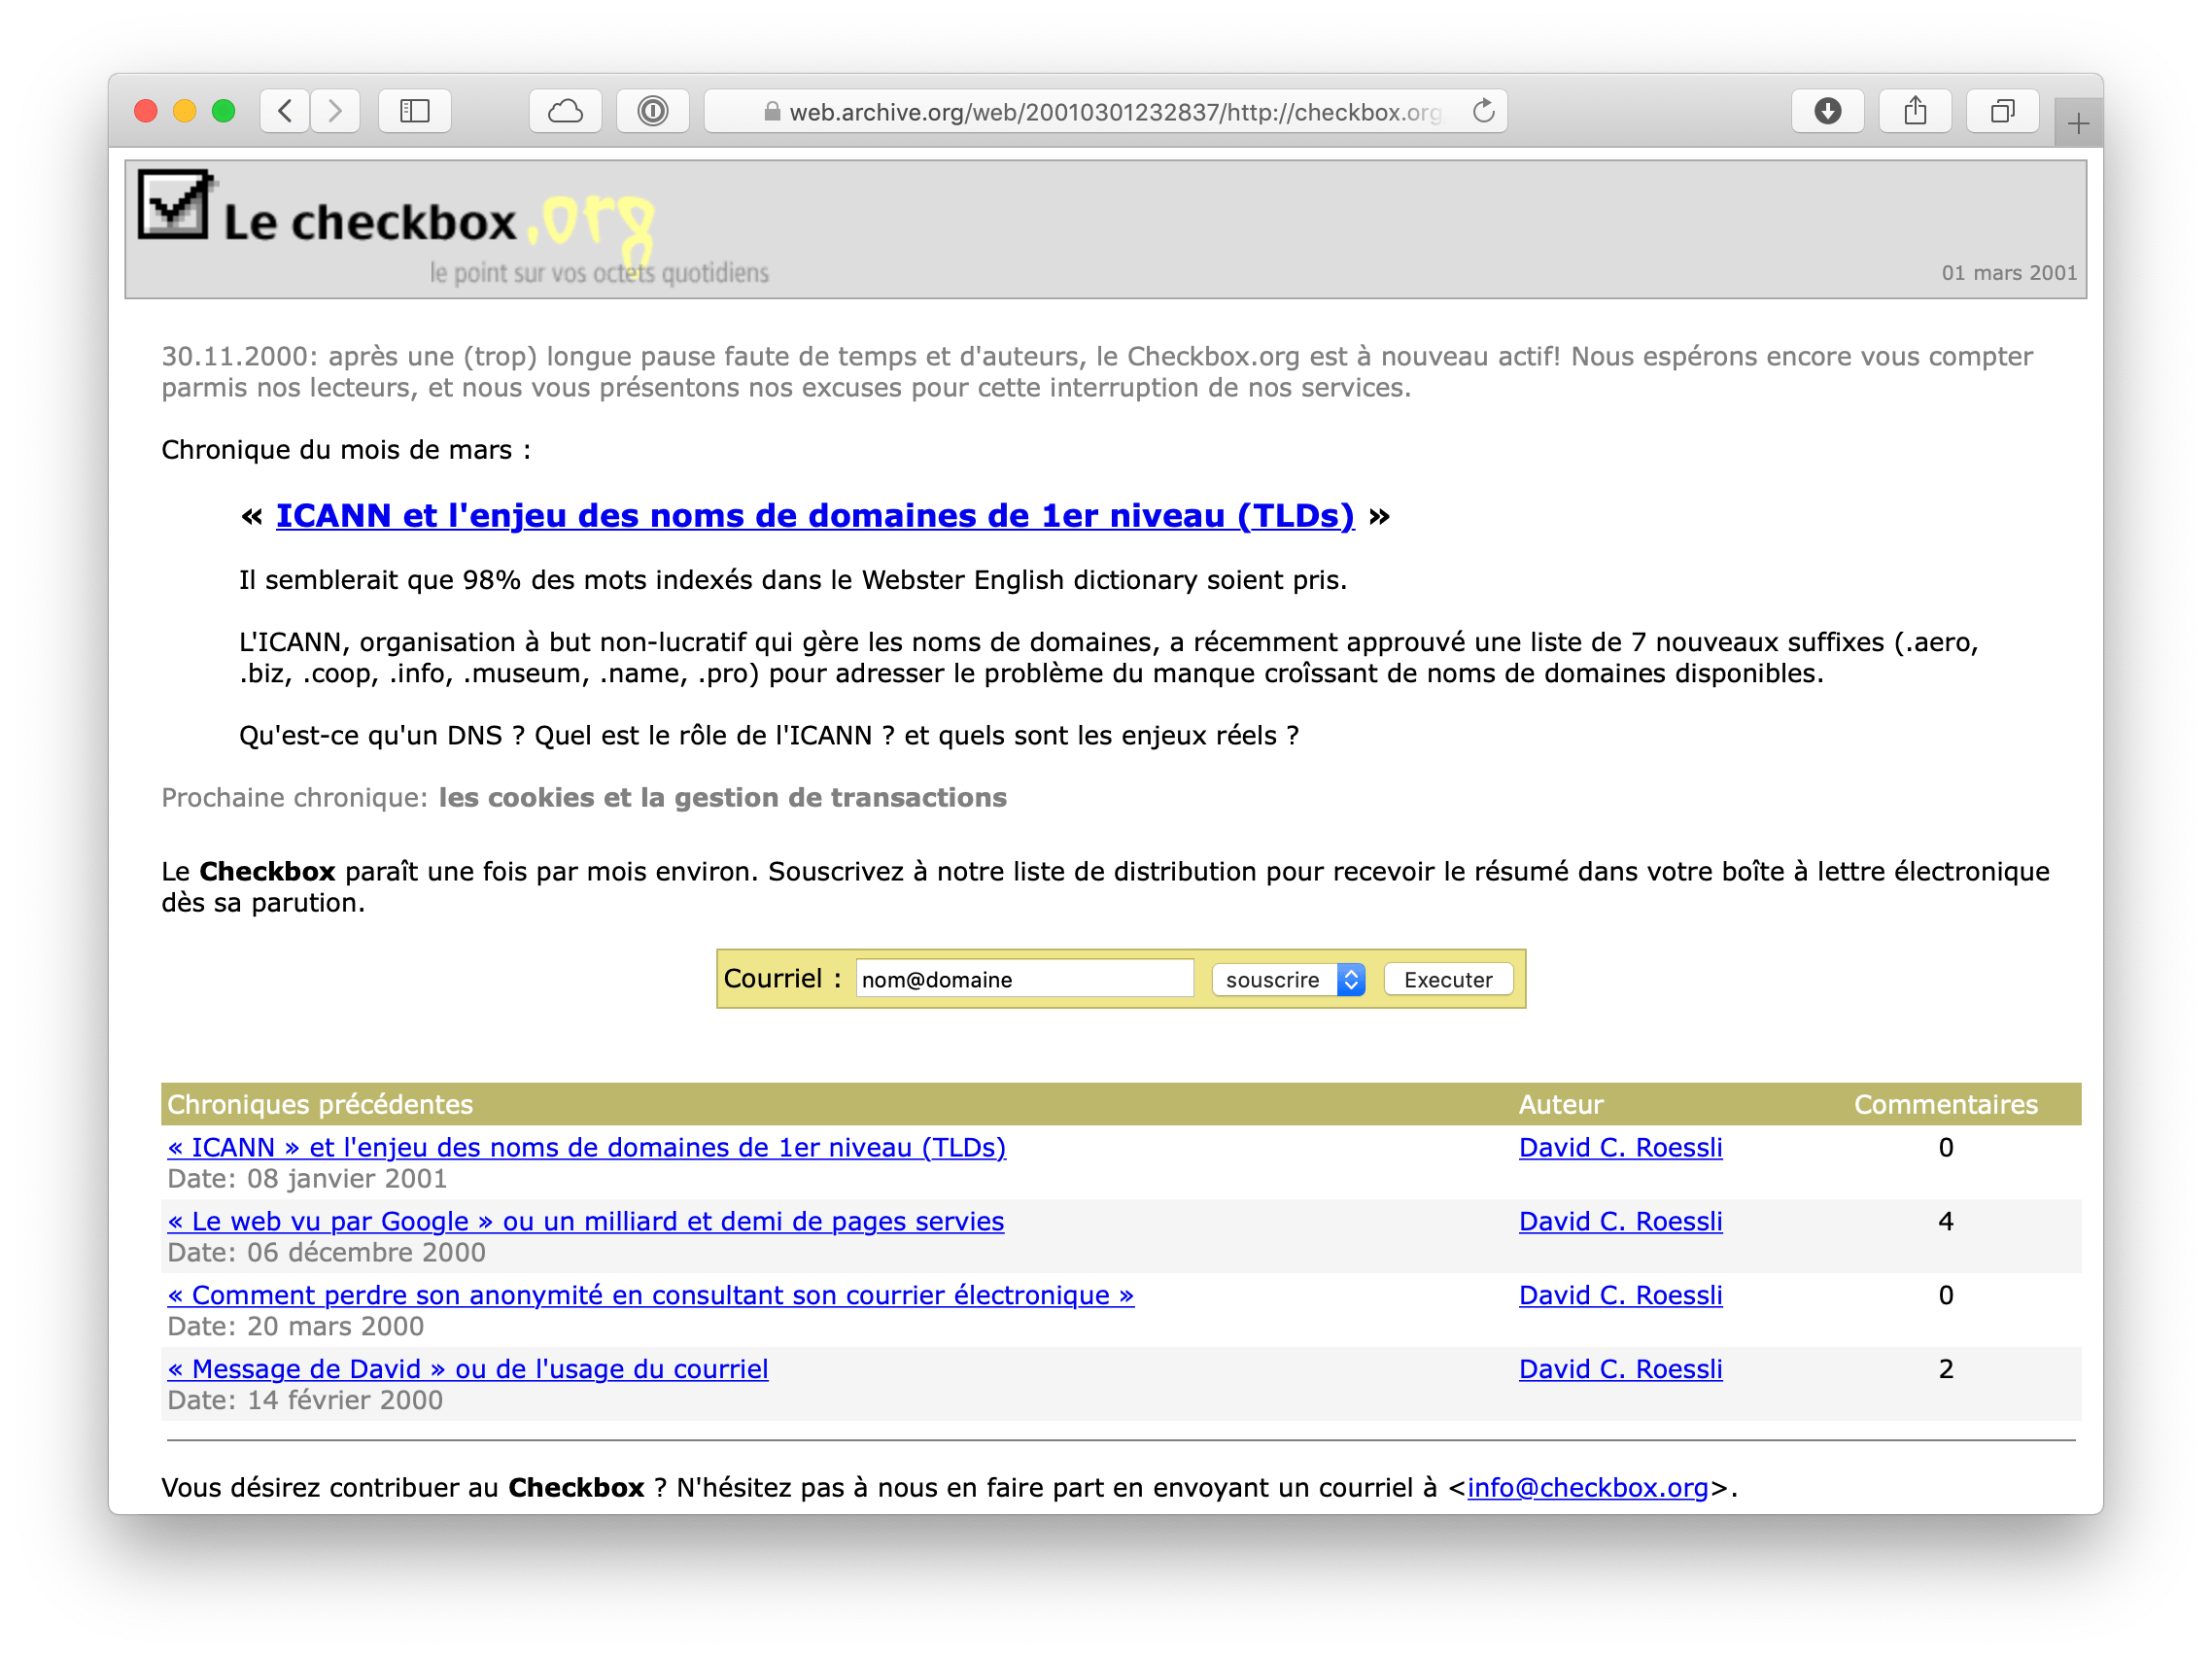 2001 checkbox.org